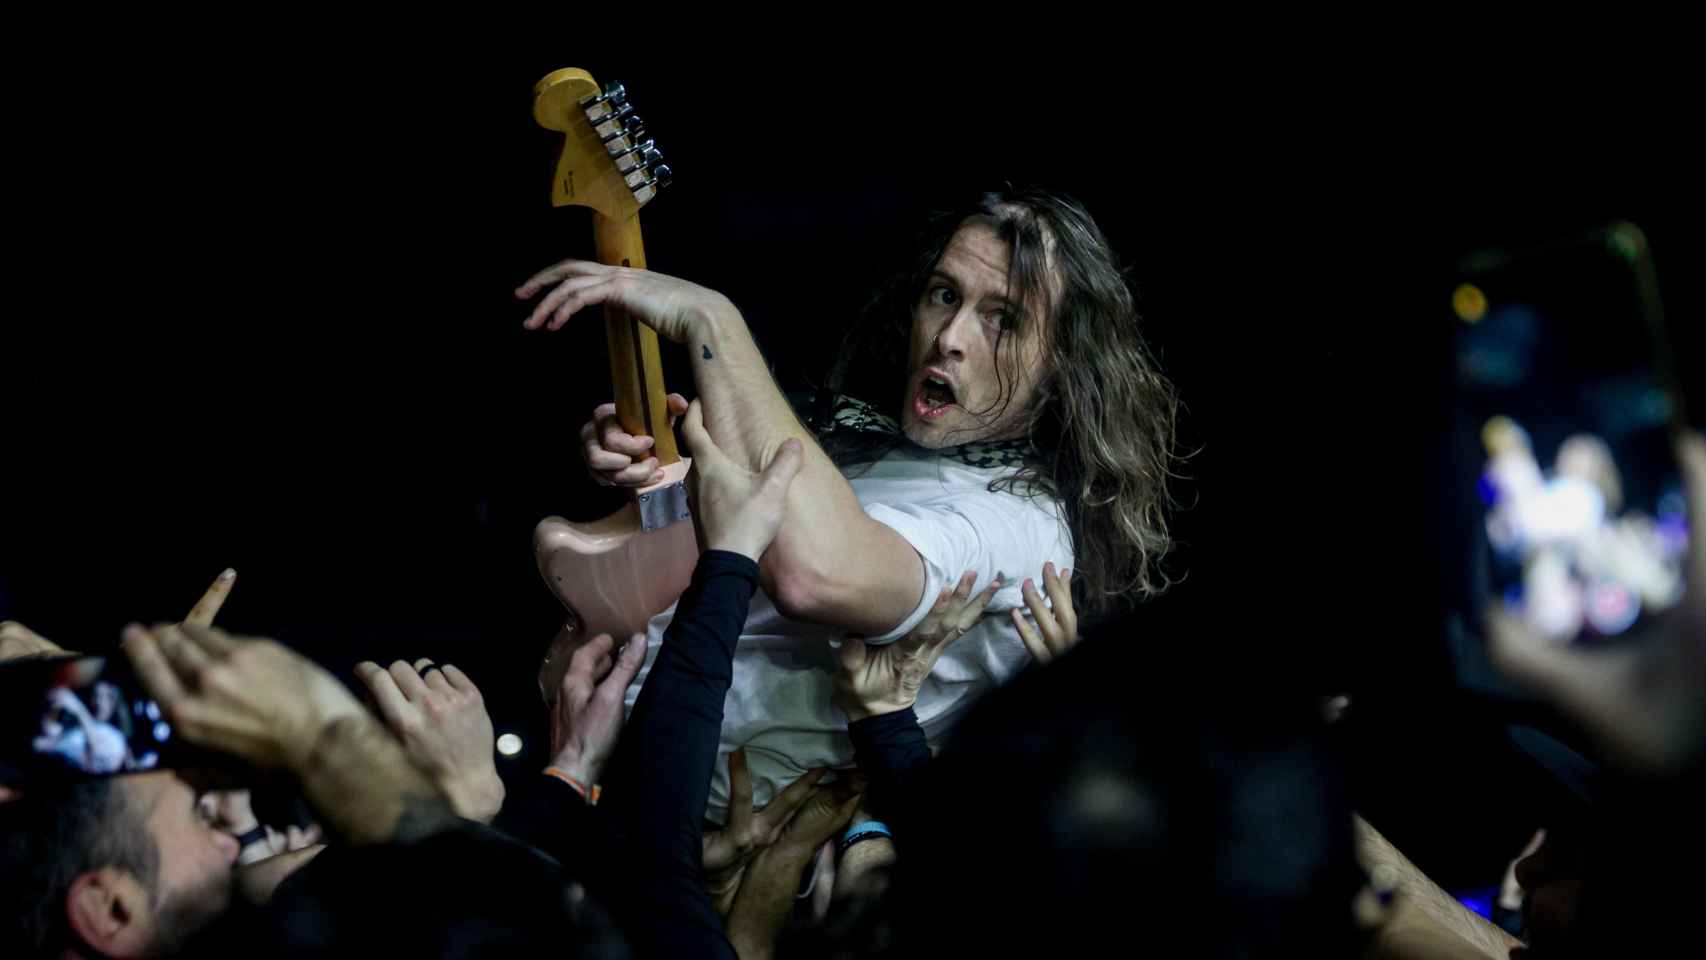 Lee Kiernan, guitarrista de Idles, llevado en volandas por el público durante su concierto de este viernes en el Wizink Center de Madrid. Foto: Ricardo Rubio/Europa Press